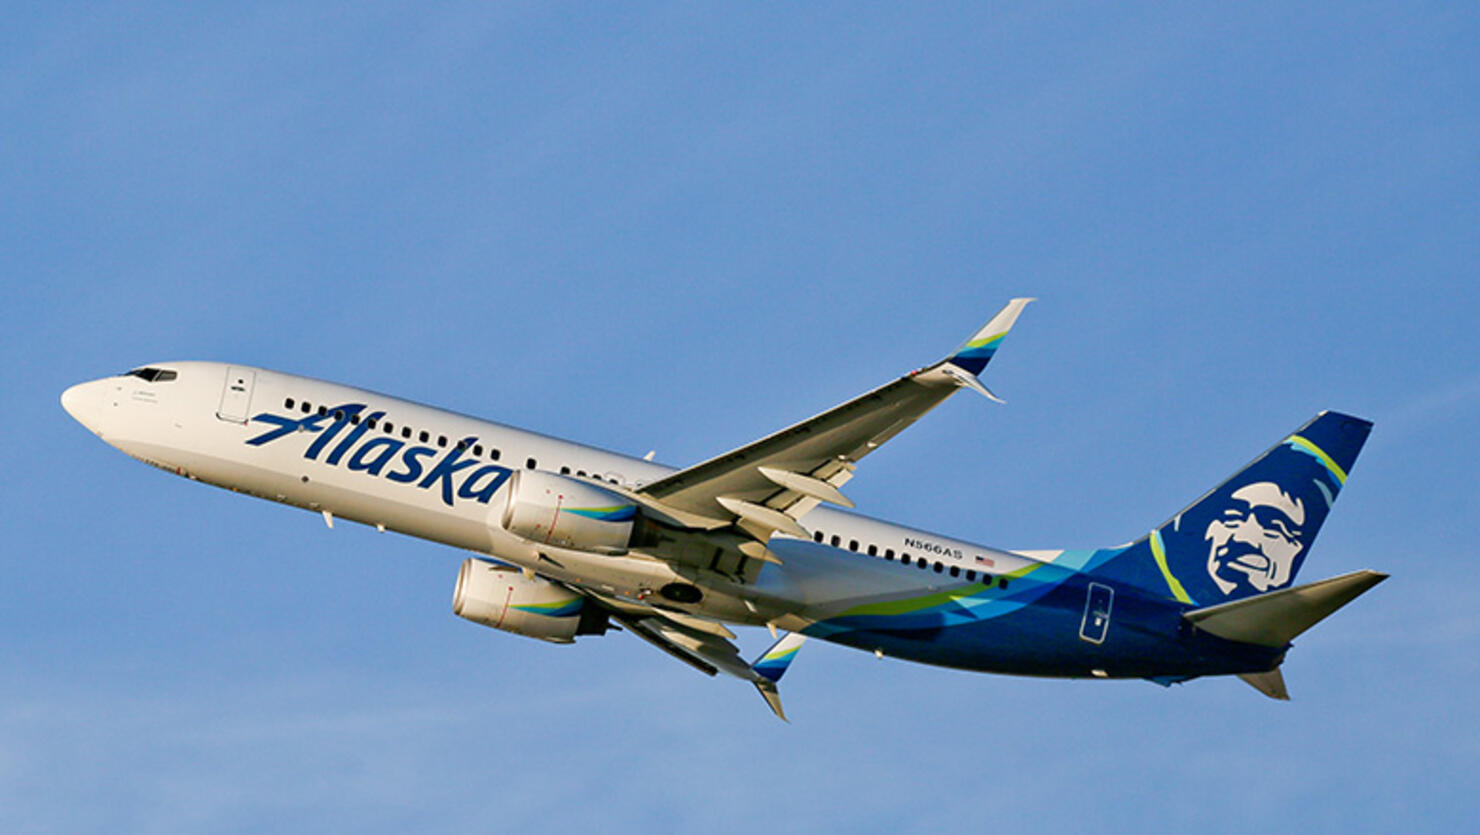 Naked passenger turns Alaska Airlines plane back to 